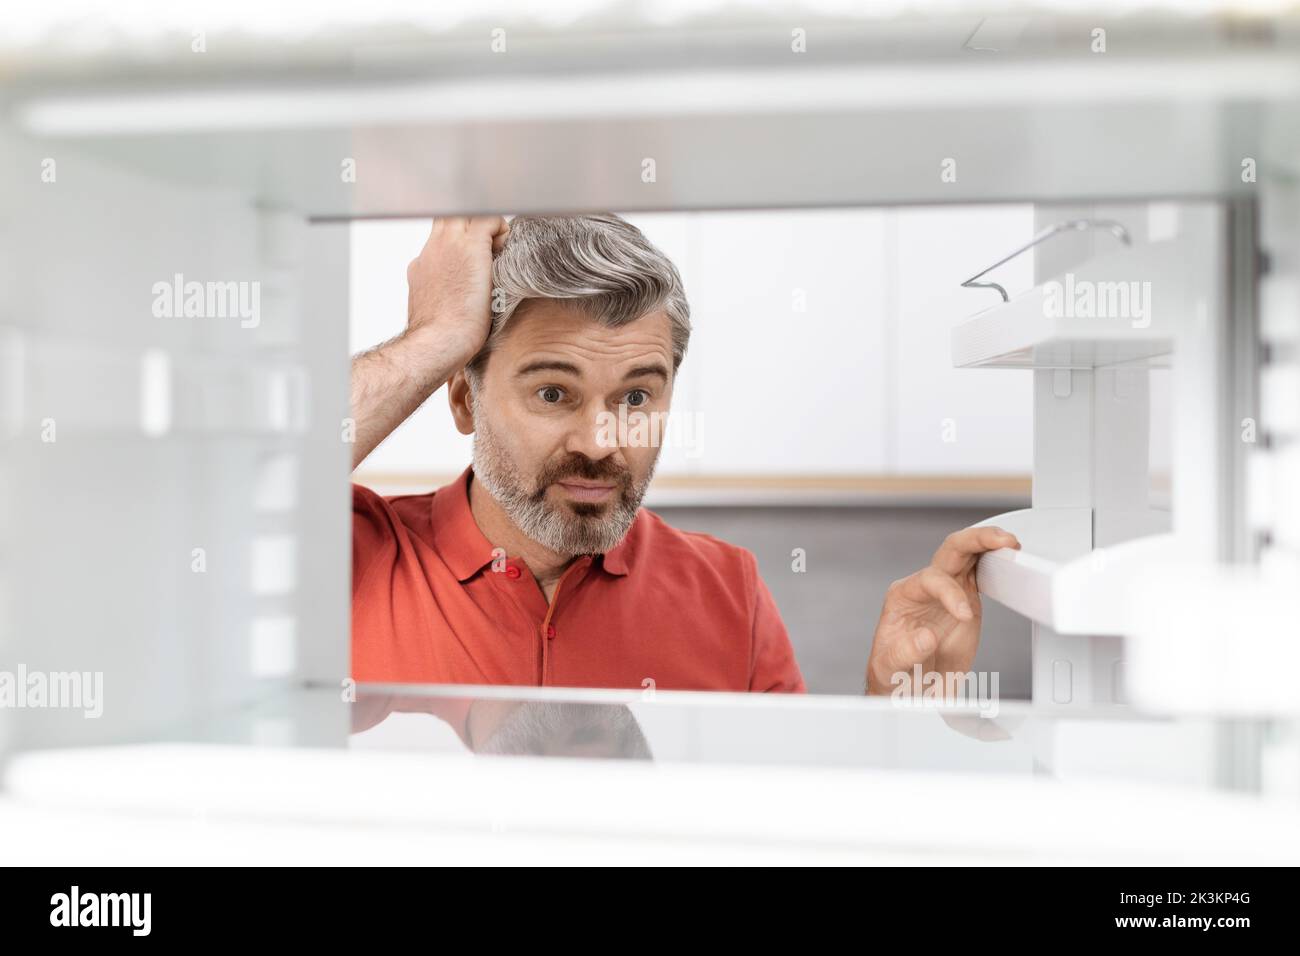 Überfordert Mann mittleren Alters, der in einen leeren Kühlschrank schaute Stockfoto